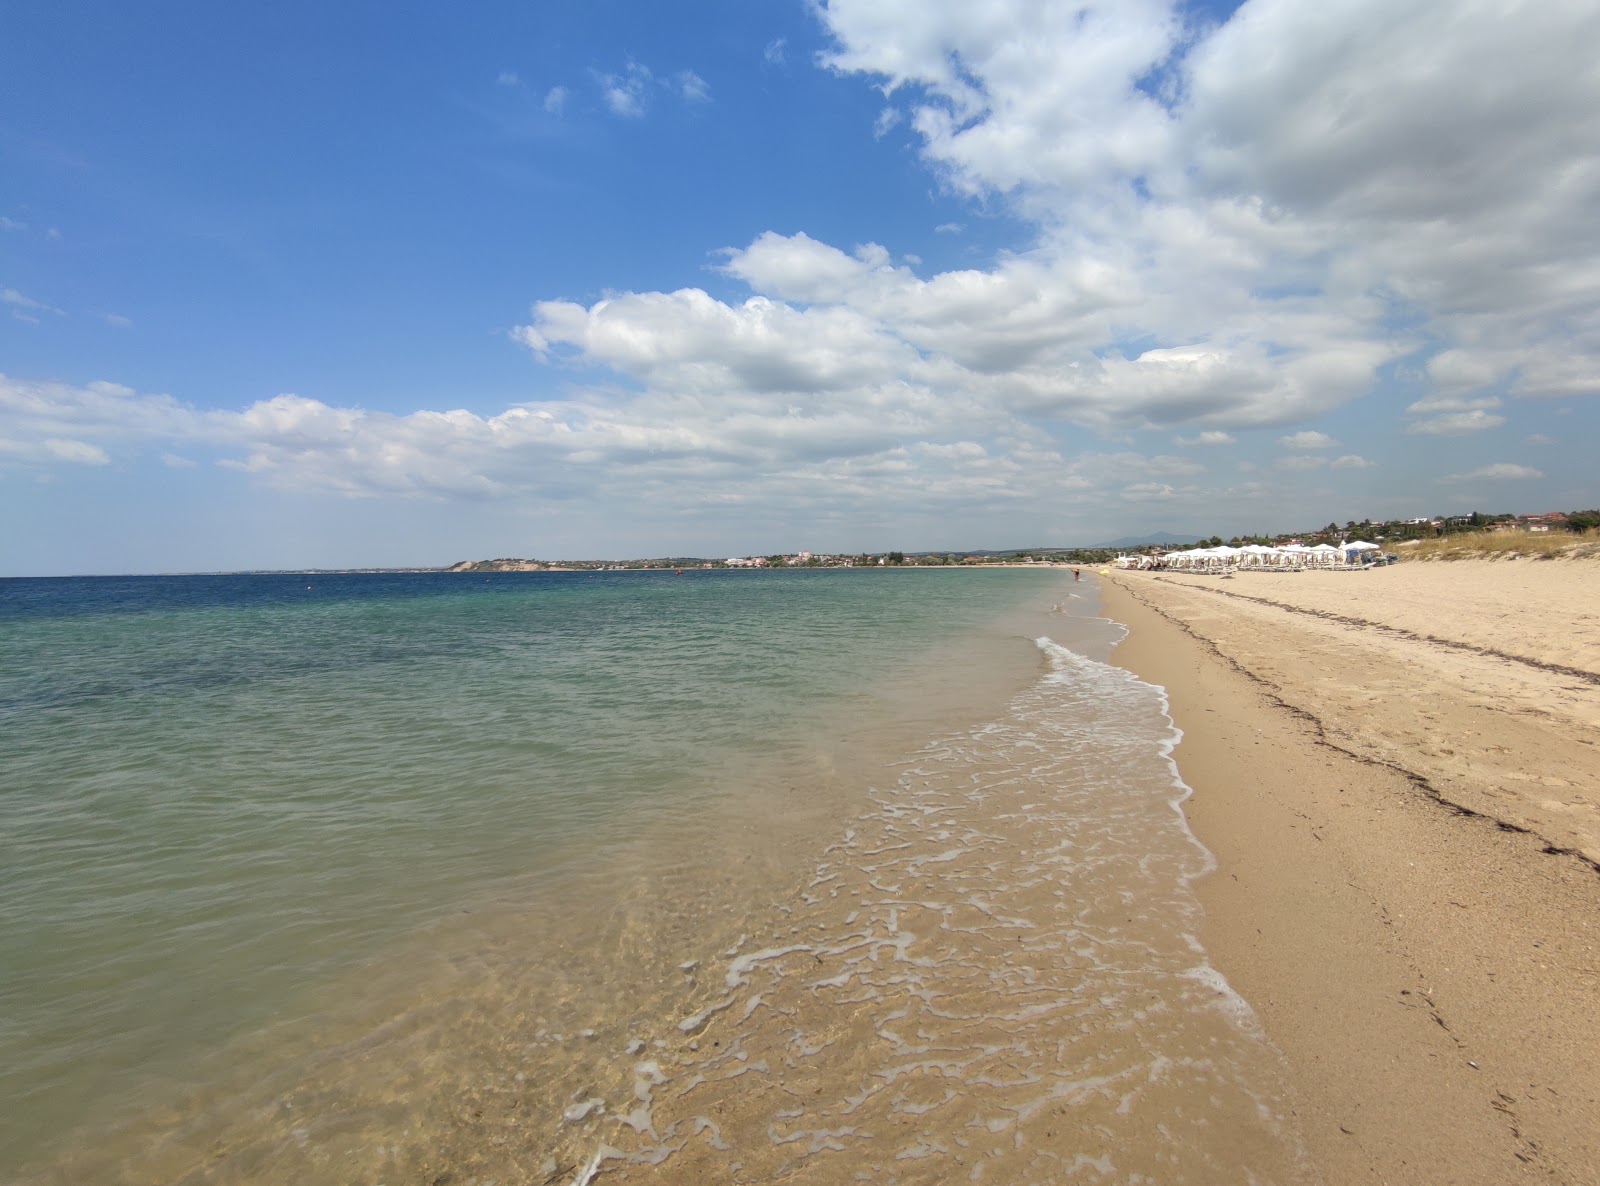 Nea Iraklia beach'in fotoğrafı parlak kum yüzey ile